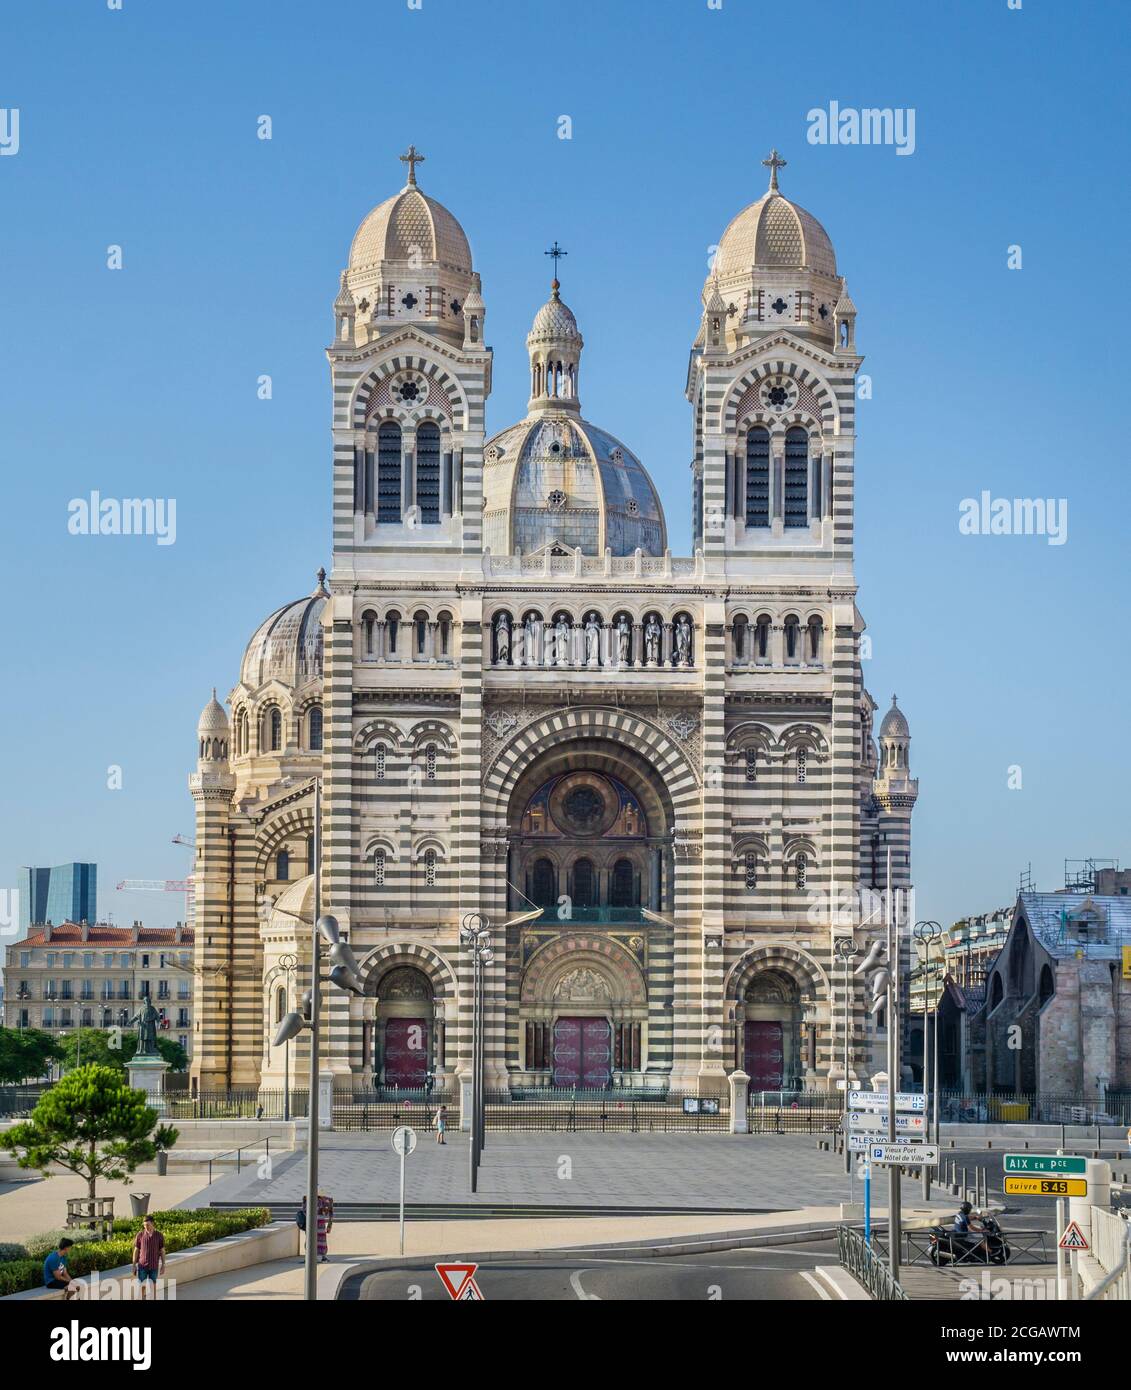 Vue sur la cathédrale romane-byzantine de Marseille ou la cathédrale Saint-Mary Major, Marseille, département des Bouches-du-Rhône, France Banque D'Images